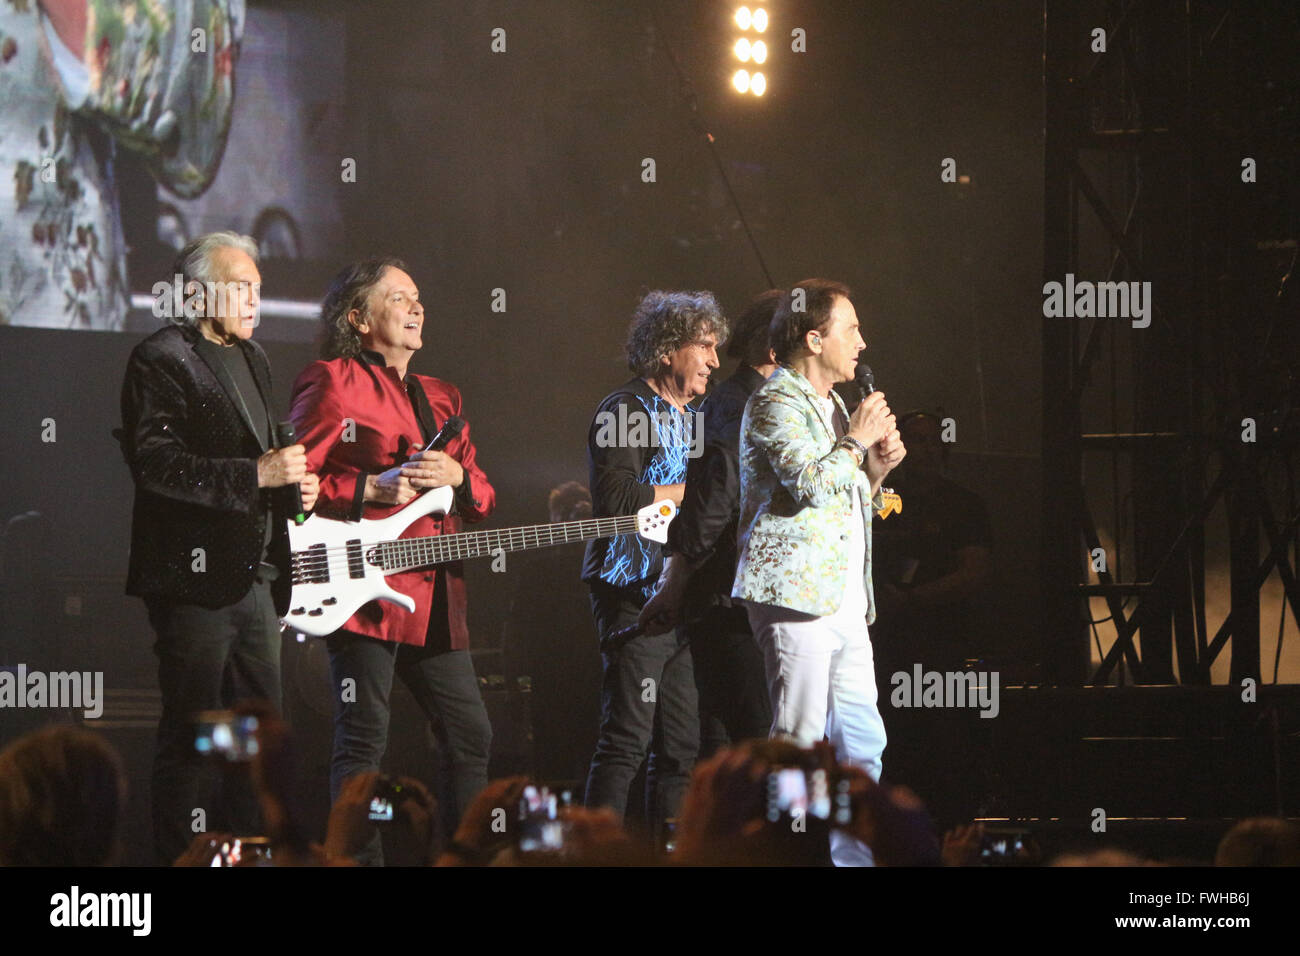 Mailand, Italien. 11. Juni 2016. Italienische Rockband Pooh auf der Bühne in Mailand, Italien. Bildnachweis: Luca Quadrio/Alamy Live-Nachrichten. Stockfoto